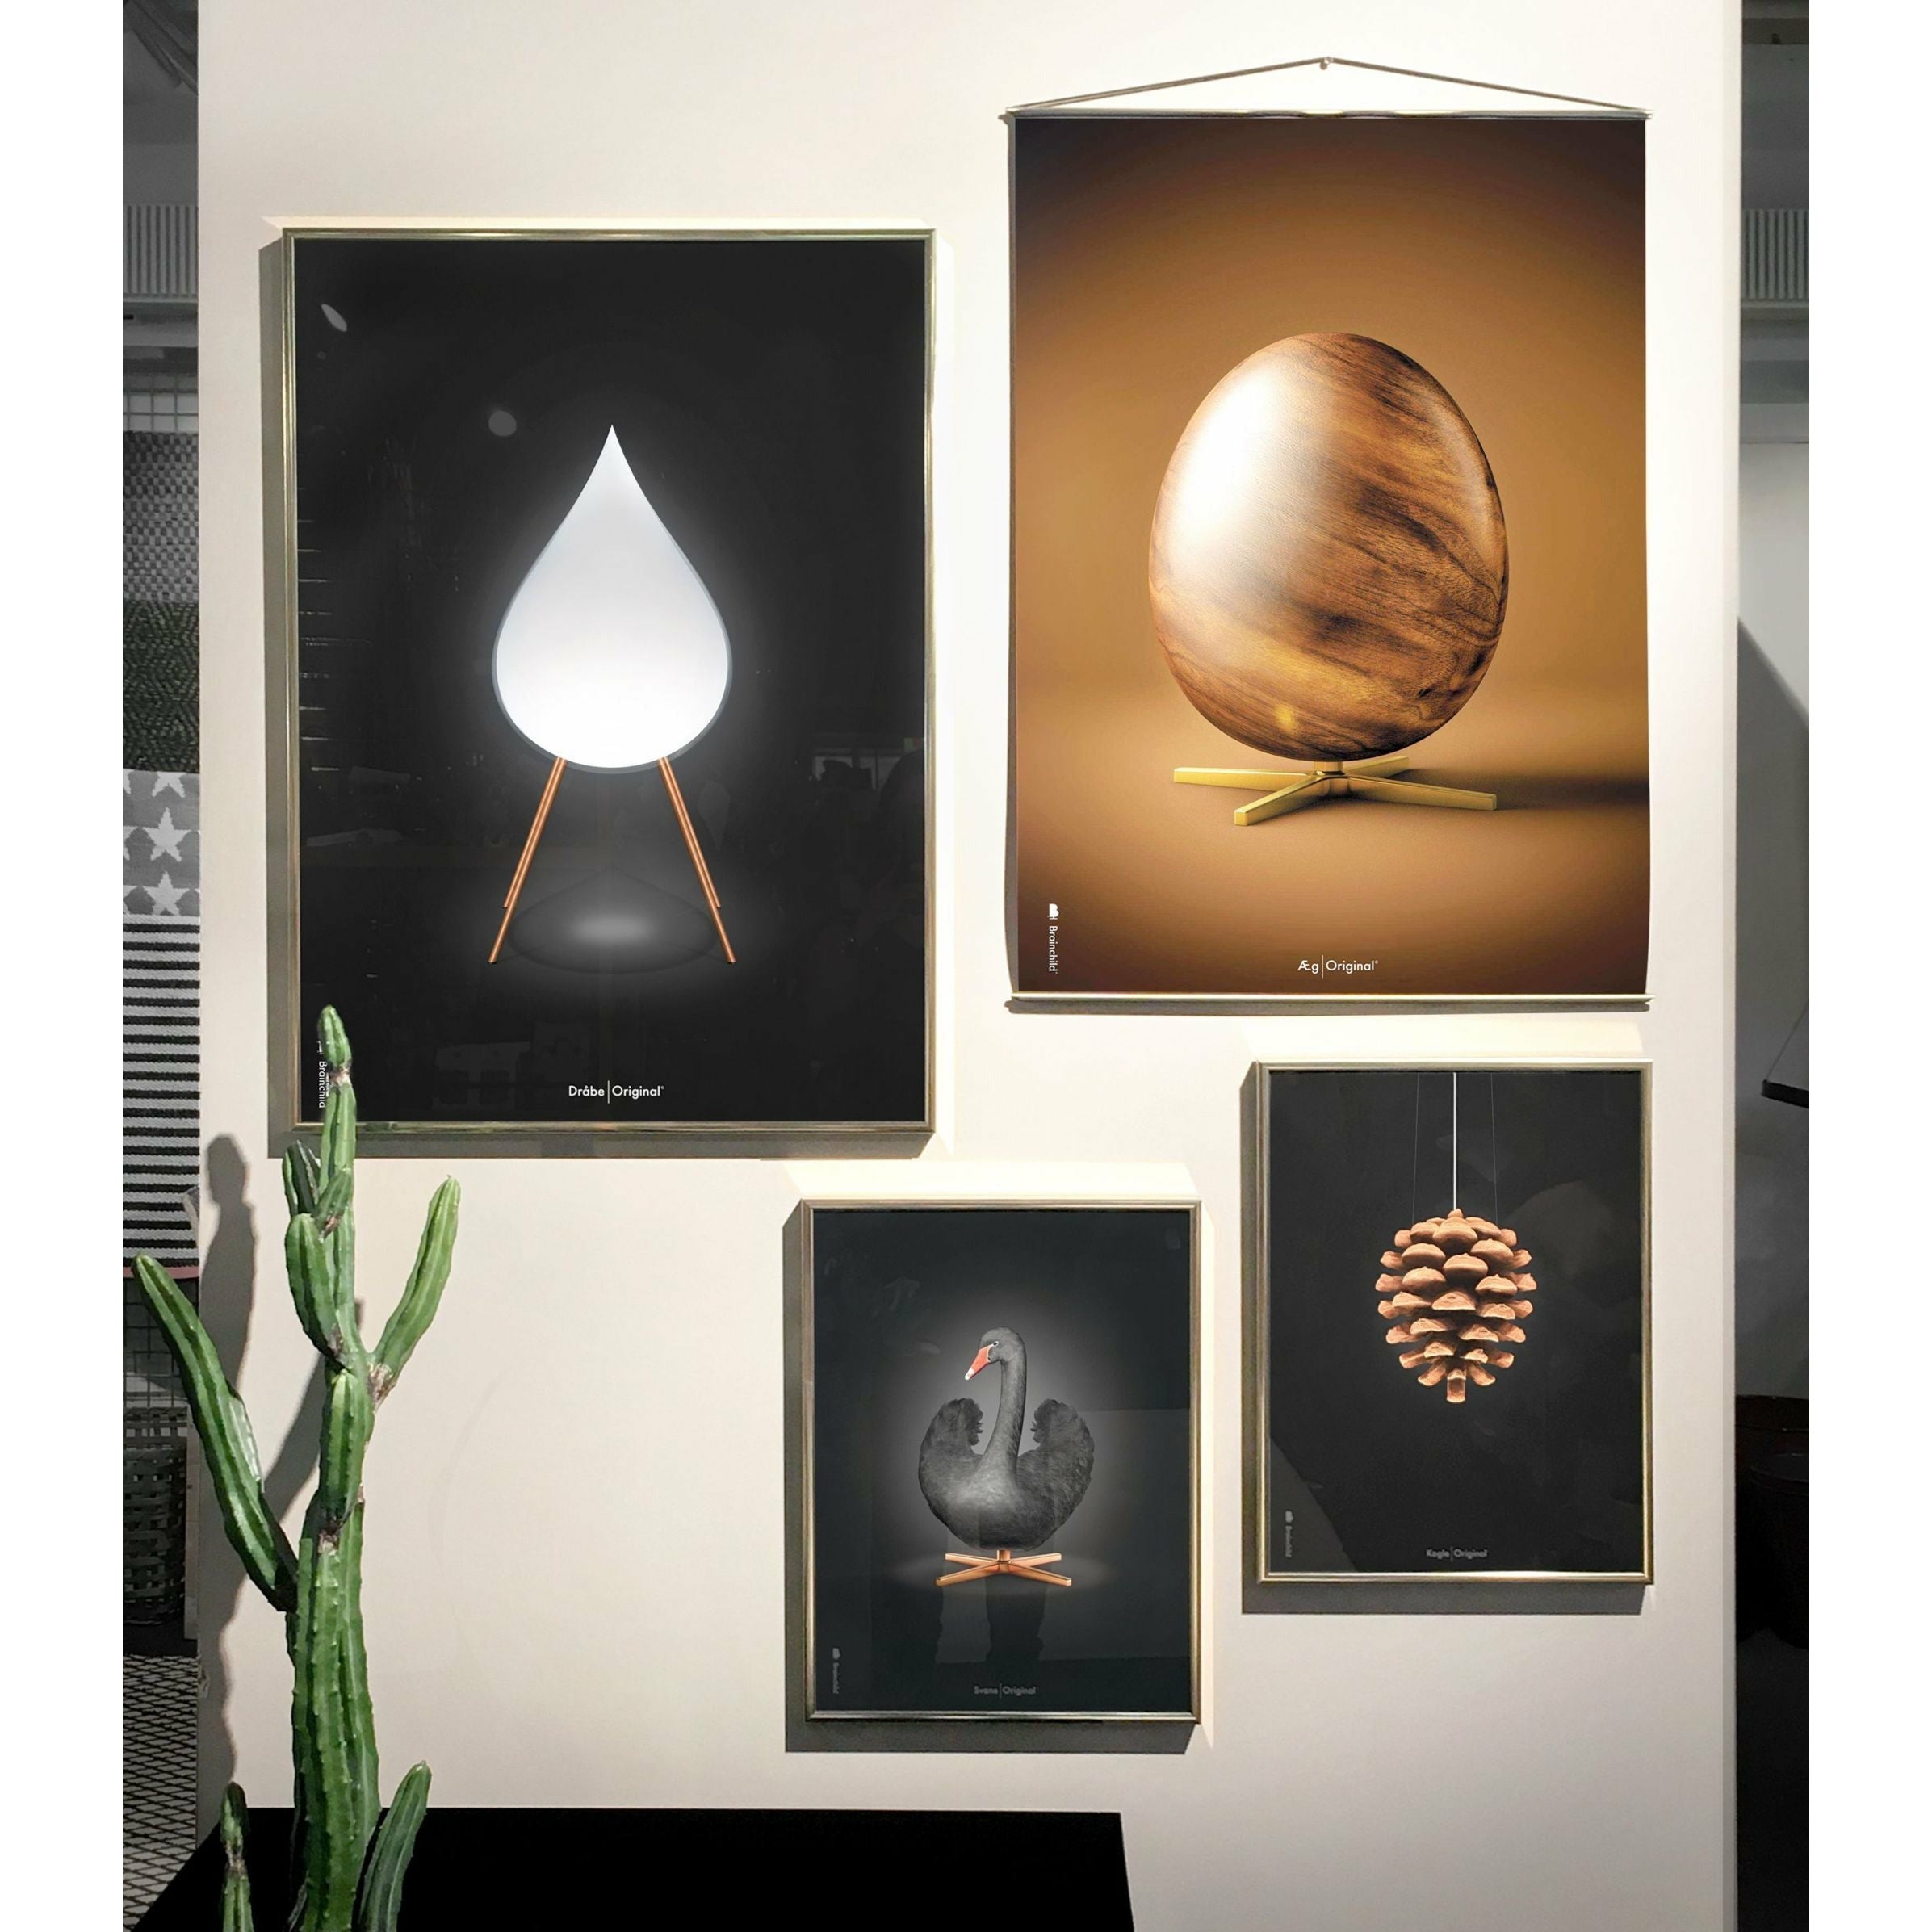 Brainchild Pine Cone Classic Poster, frame gemaakt van licht hout A5, zwarte achtergrond